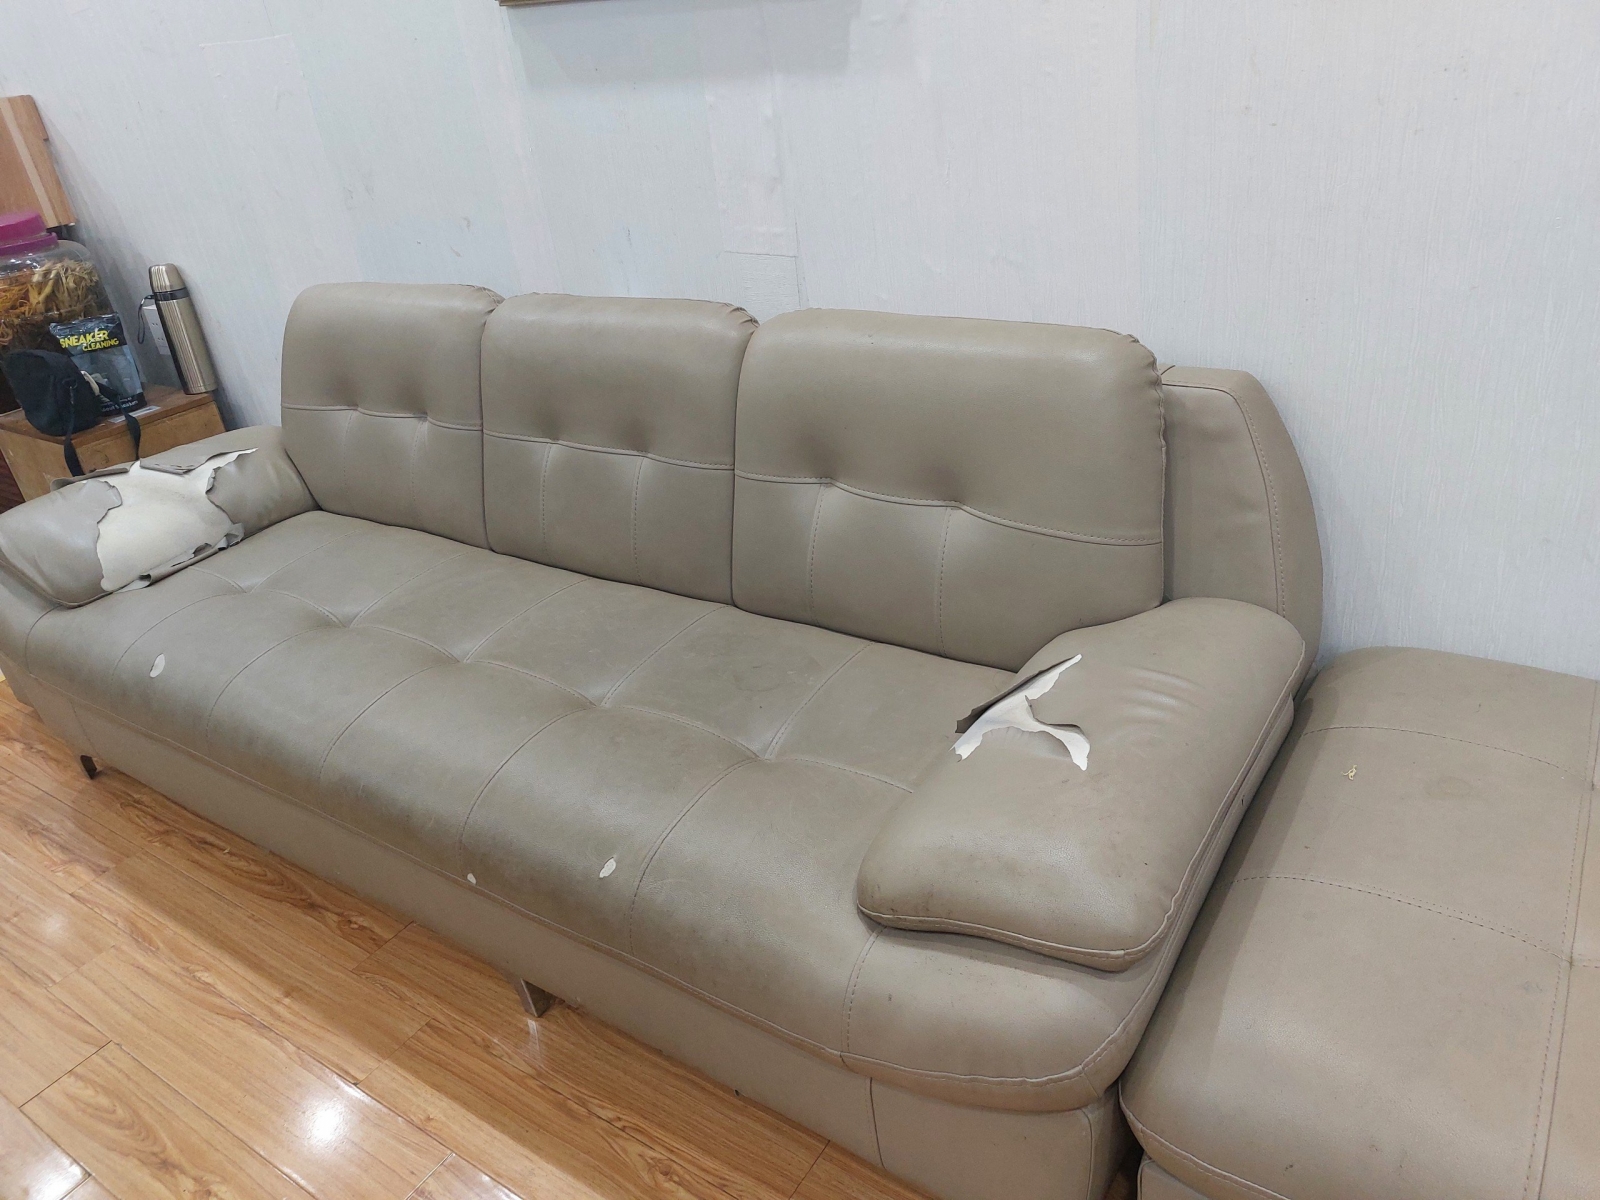 Khảo sát thực thế bộ ghế sofa tại Thanh Nhàn cần thay vỏ bọc ghế mới